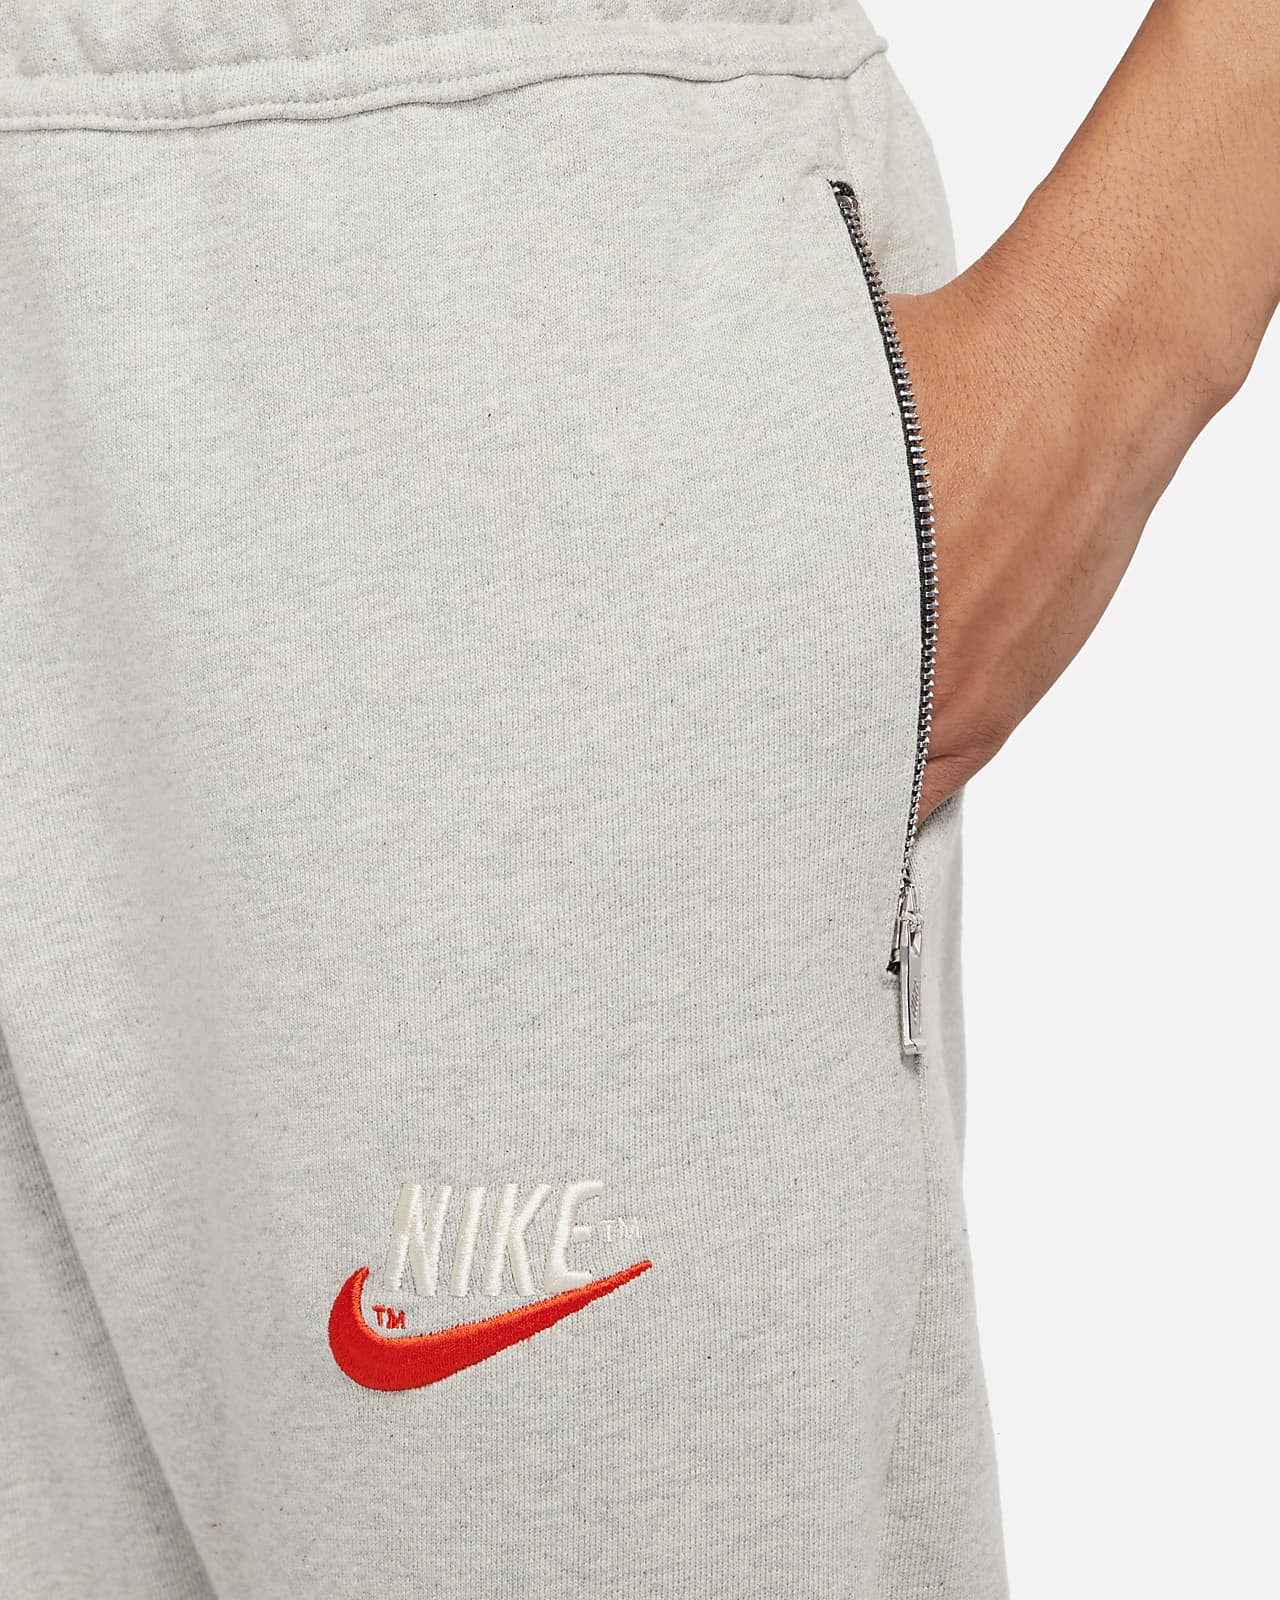 Nike公式 ナイキ スポーツウェア メンズ スニーカー パンツ オンラインストア 通販サイト